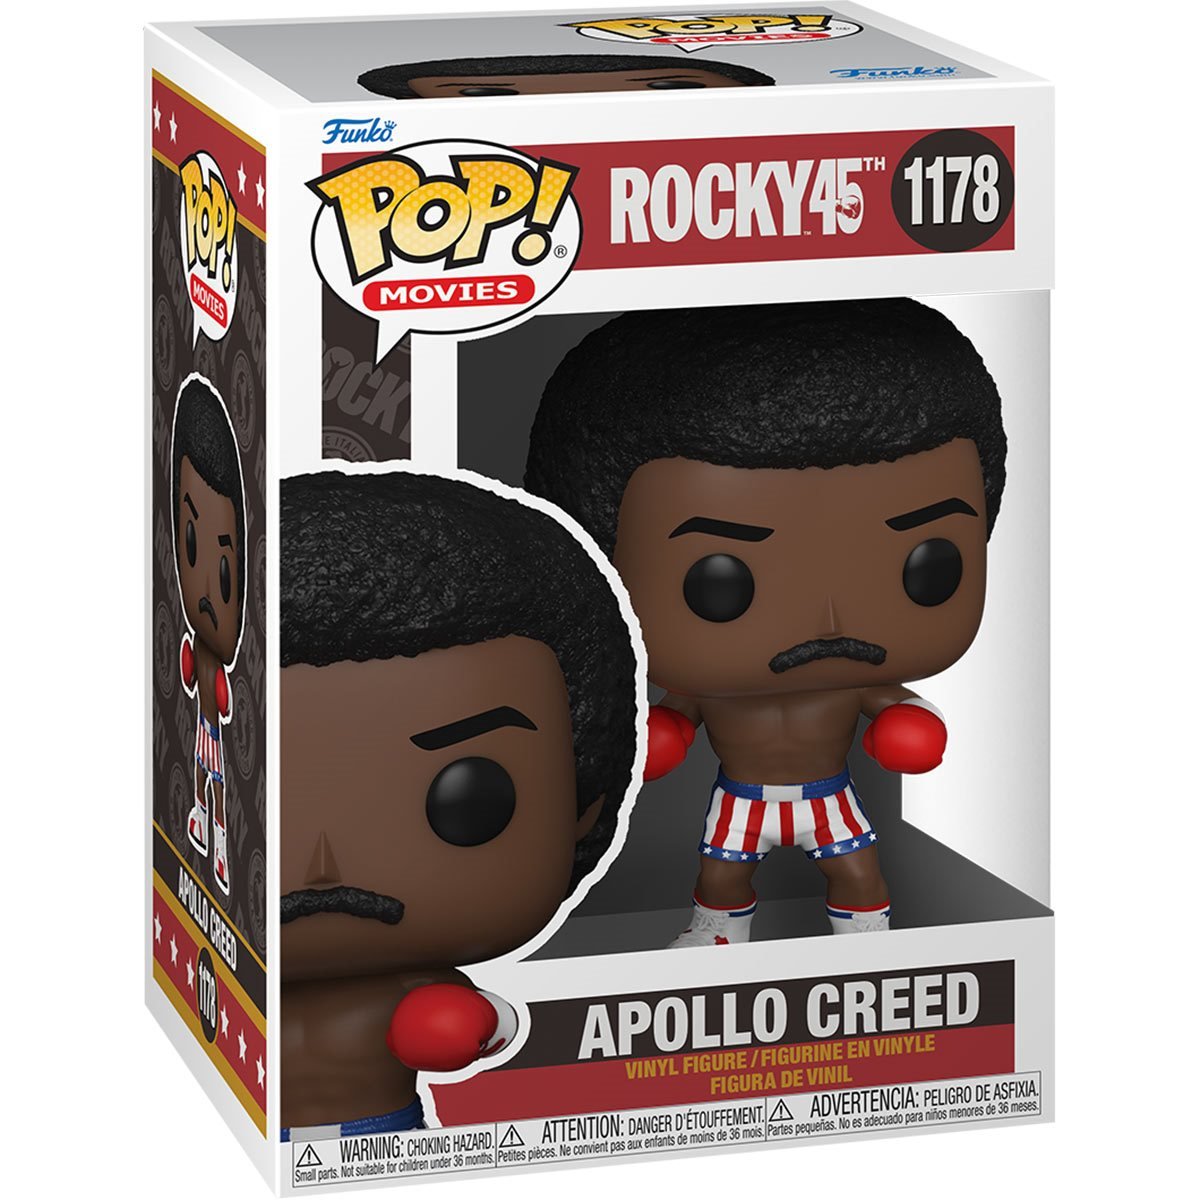 Funko Pop! Rocky 45th Anniversary: Apollo Creed